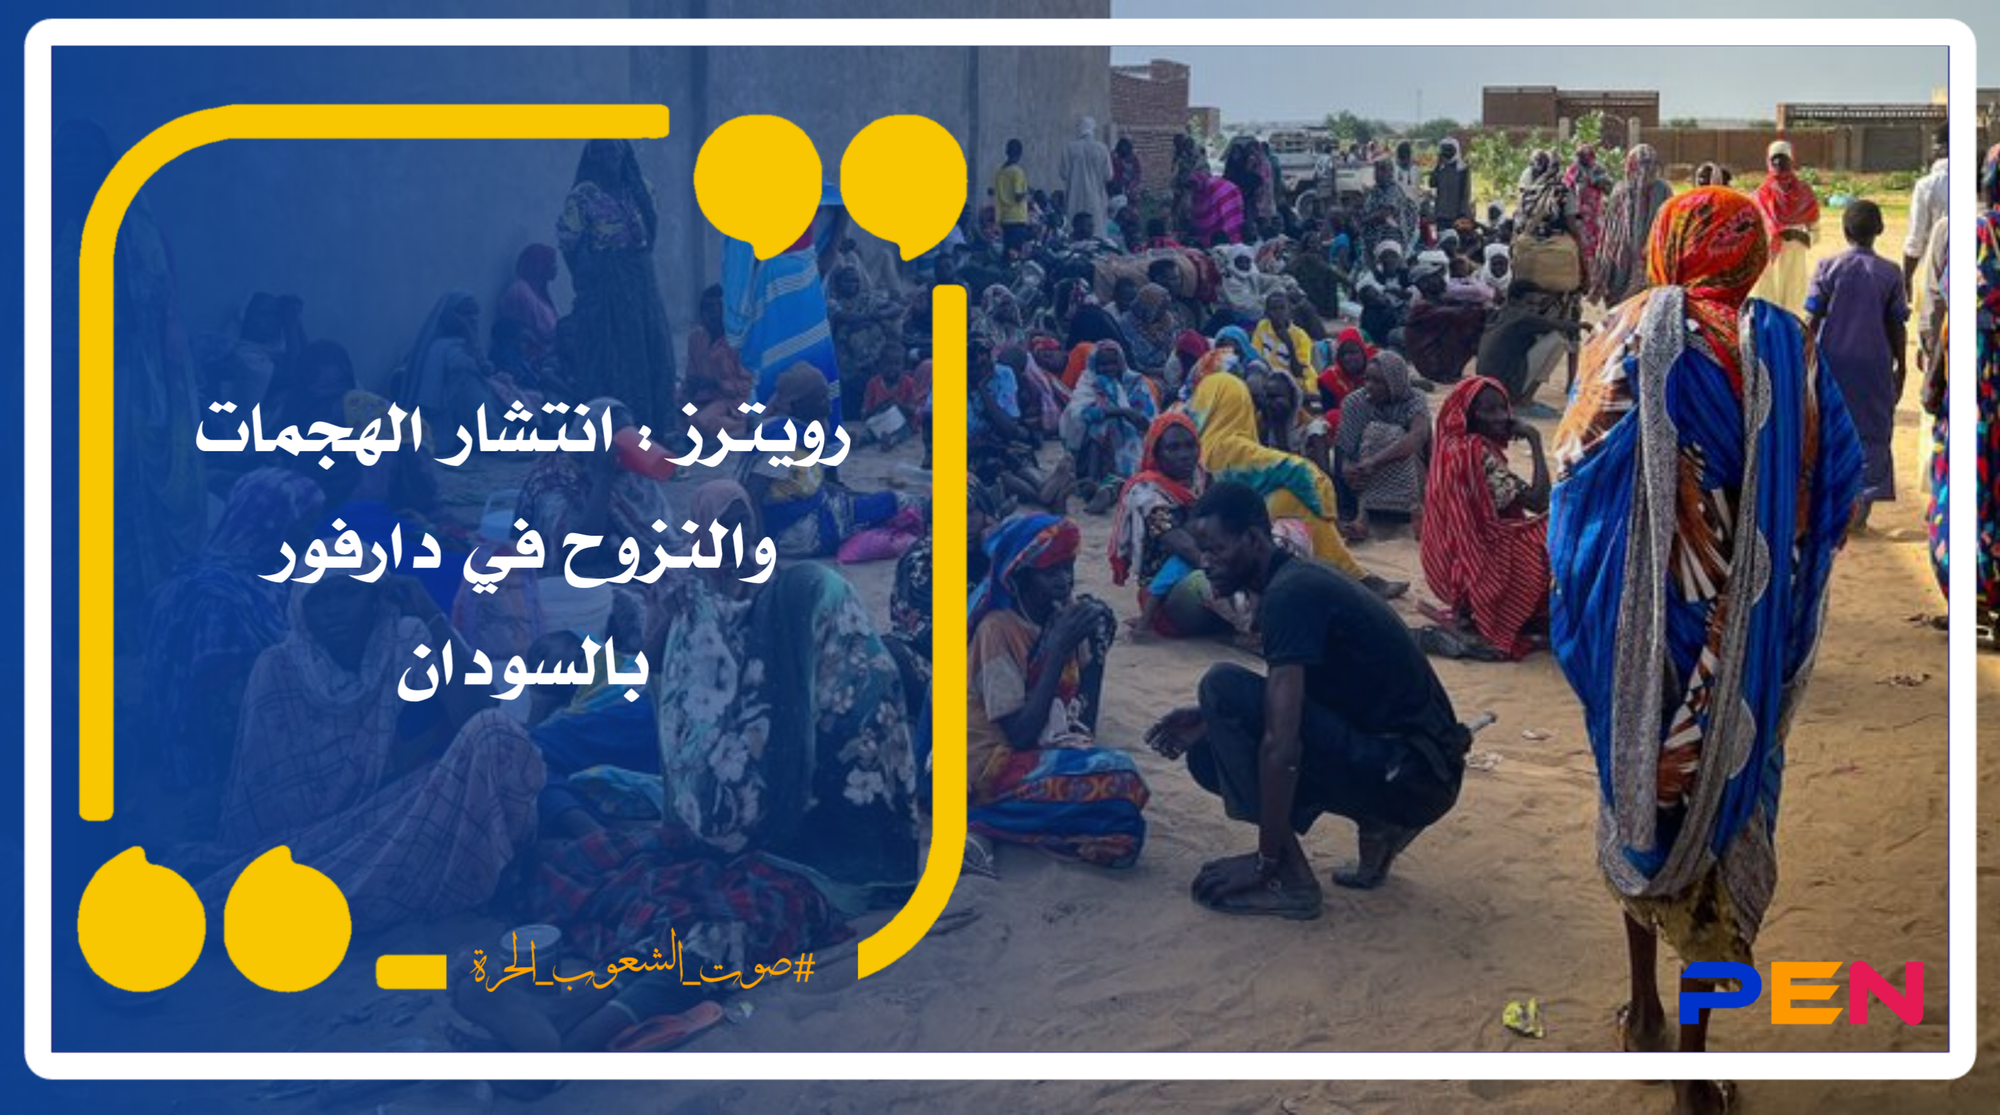 رويترز : انتشار الهجمات والنزوح في دارفور بالسودان